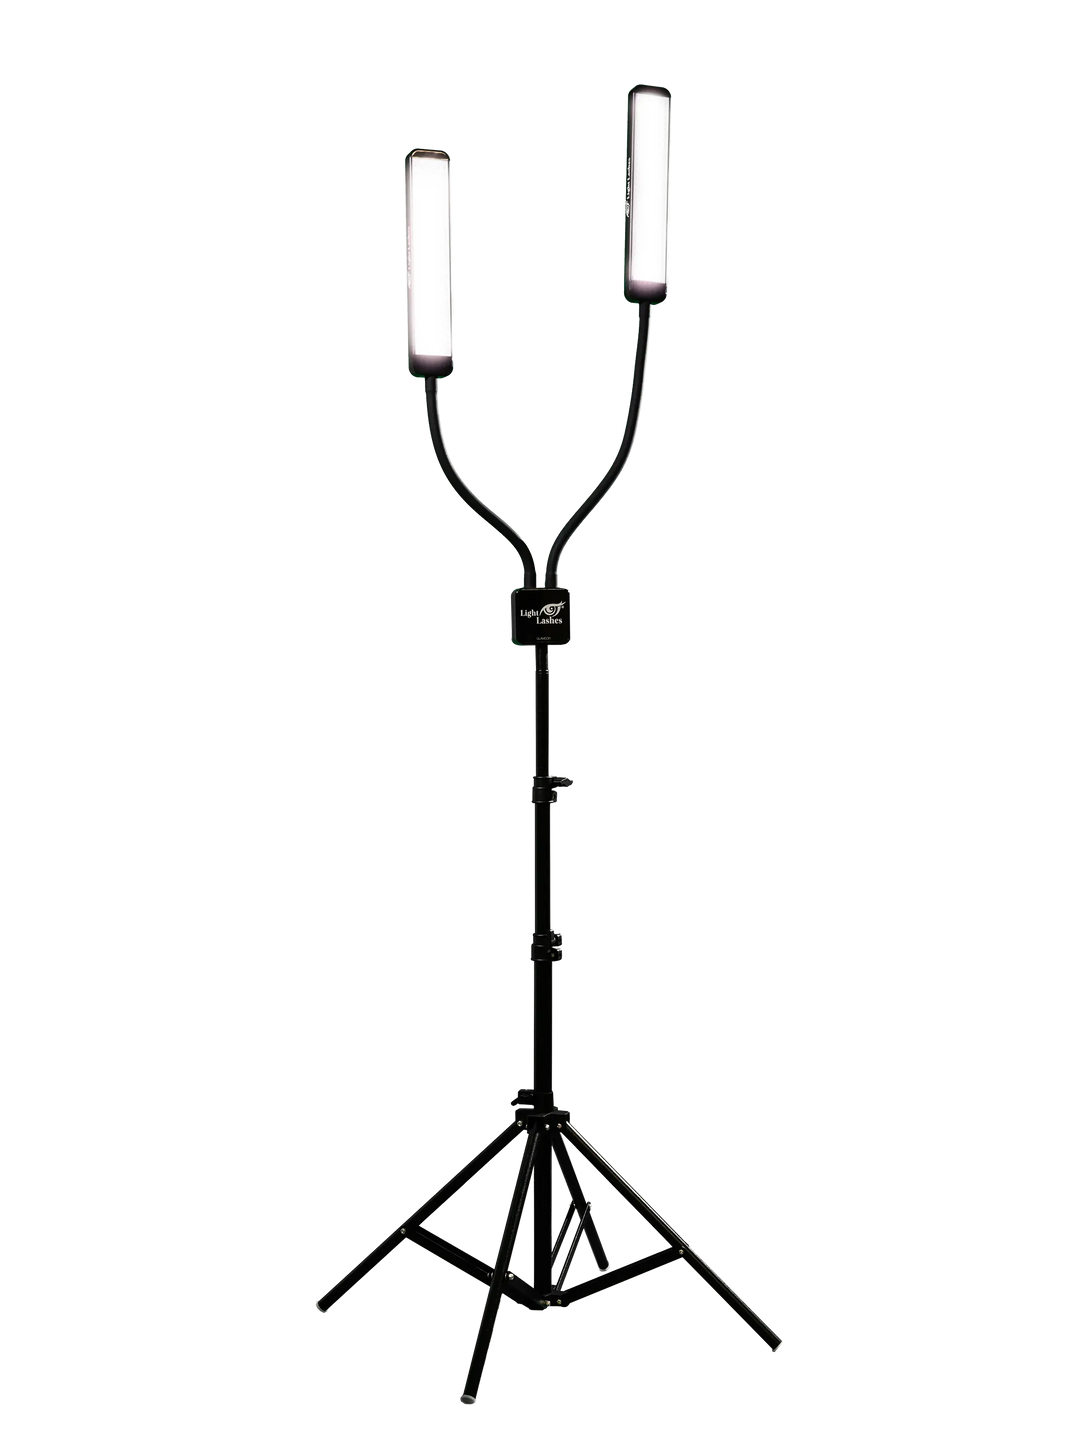 REVOLUTION X | lampada a LED personalizzata con due bracci flessibili